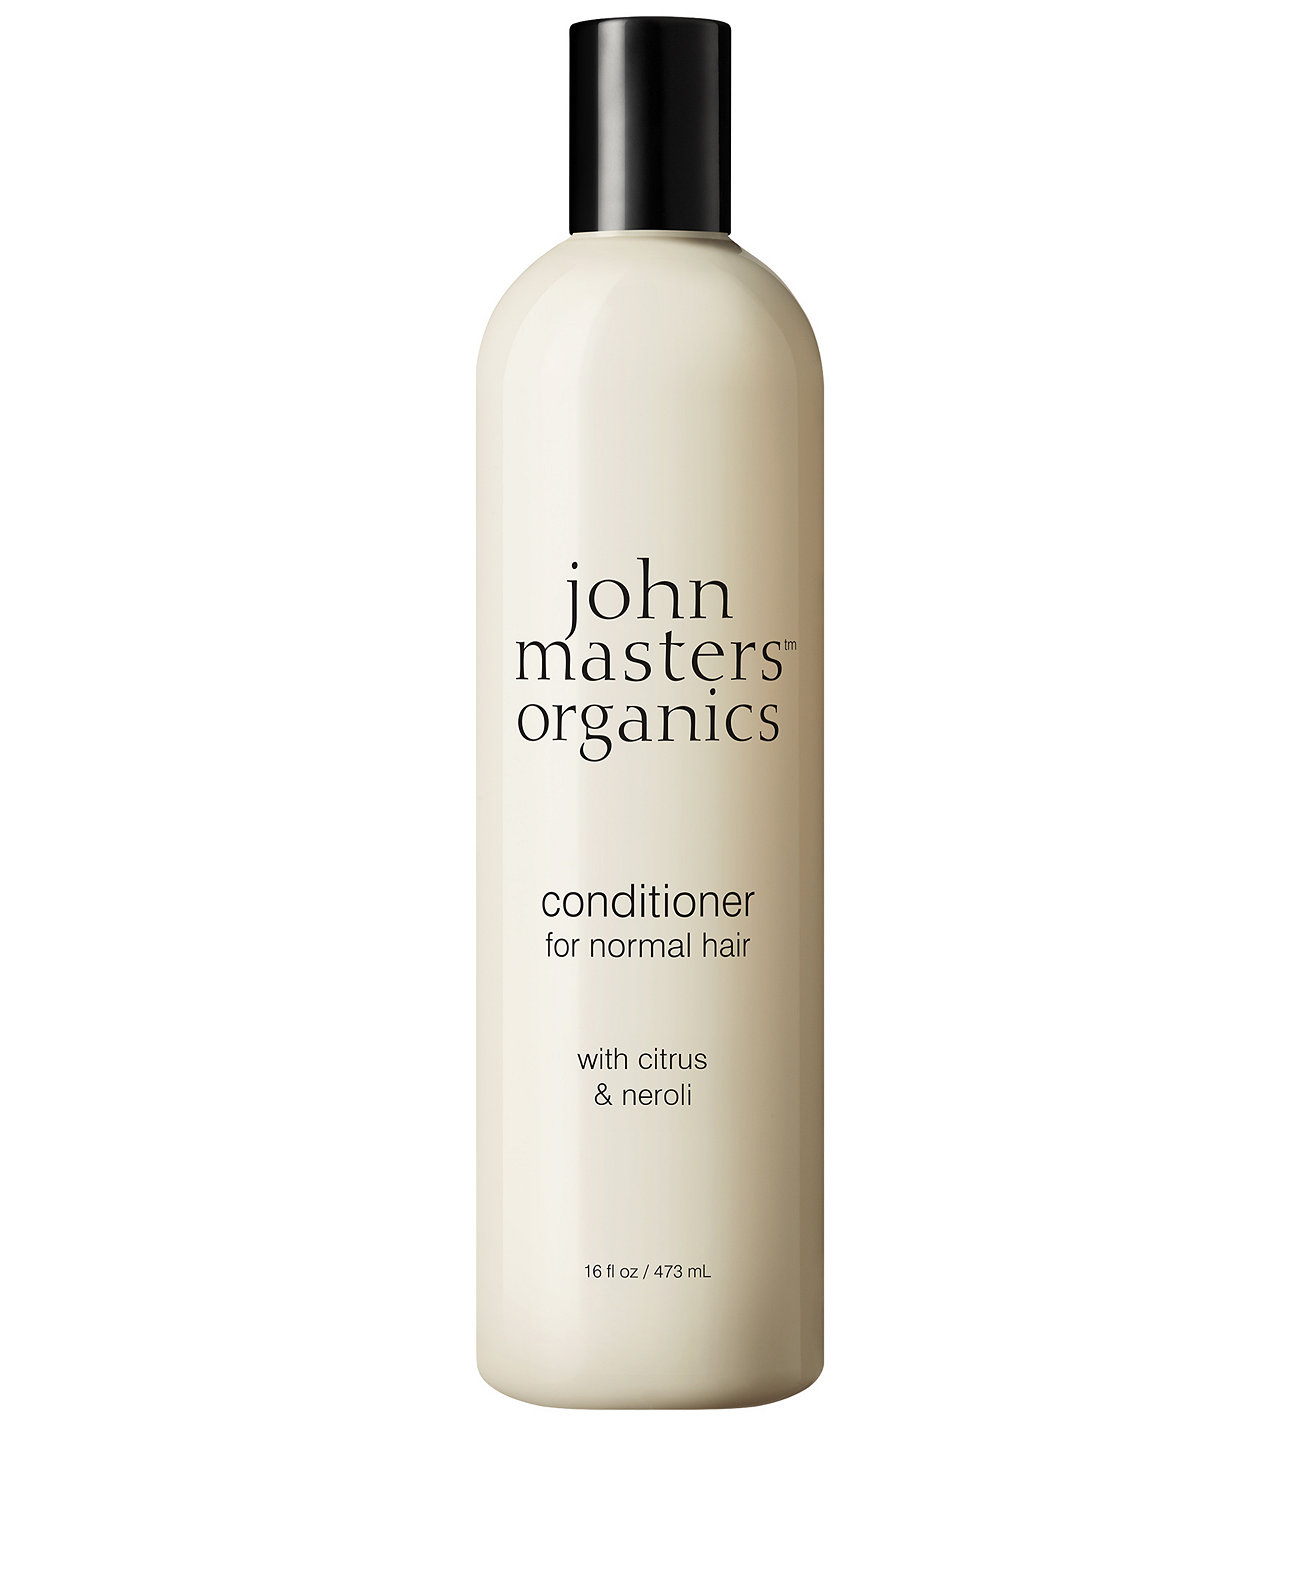 Кондиционер для нормальных волос с цитрусовыми и нероли, 16 унций. John Masters Organics